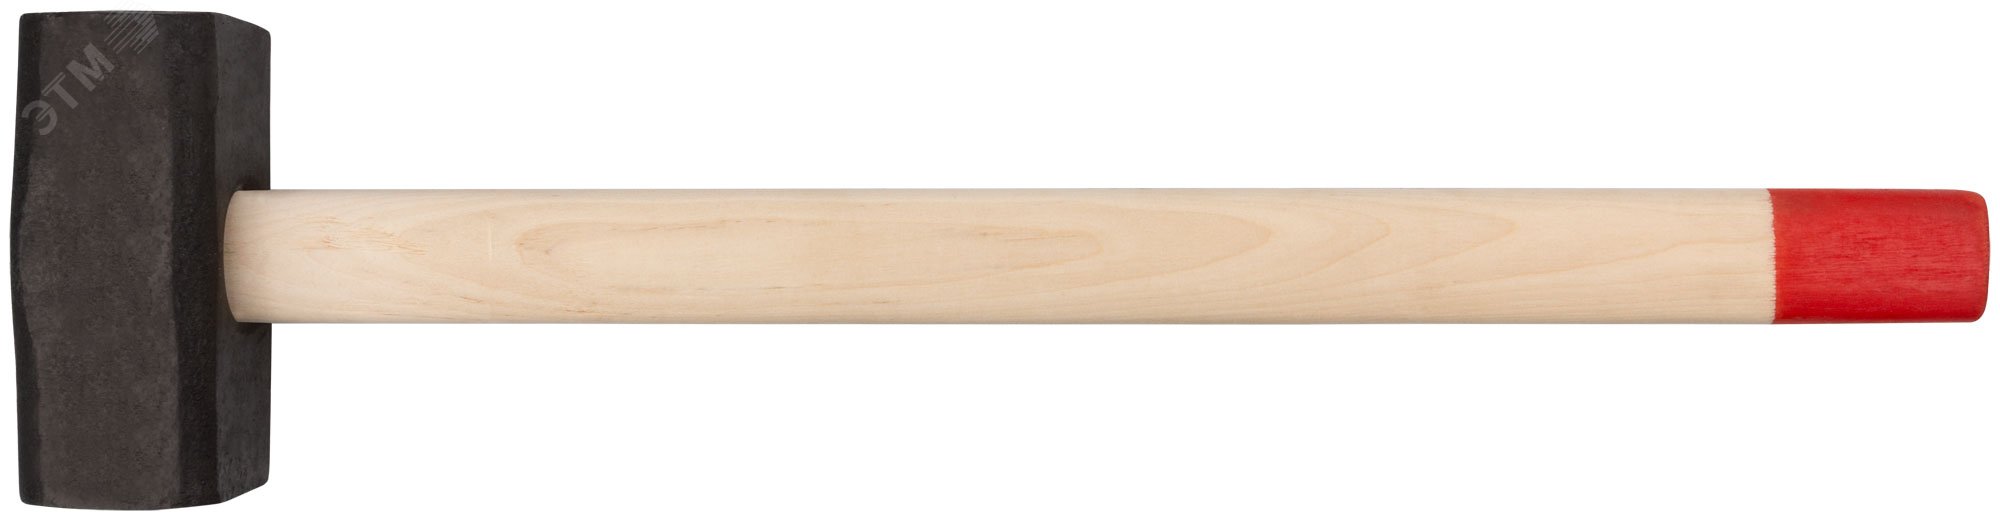 Кувалда кованая в сборе, деревянная ручка 8 кг 45028 КУРС РОС - превью